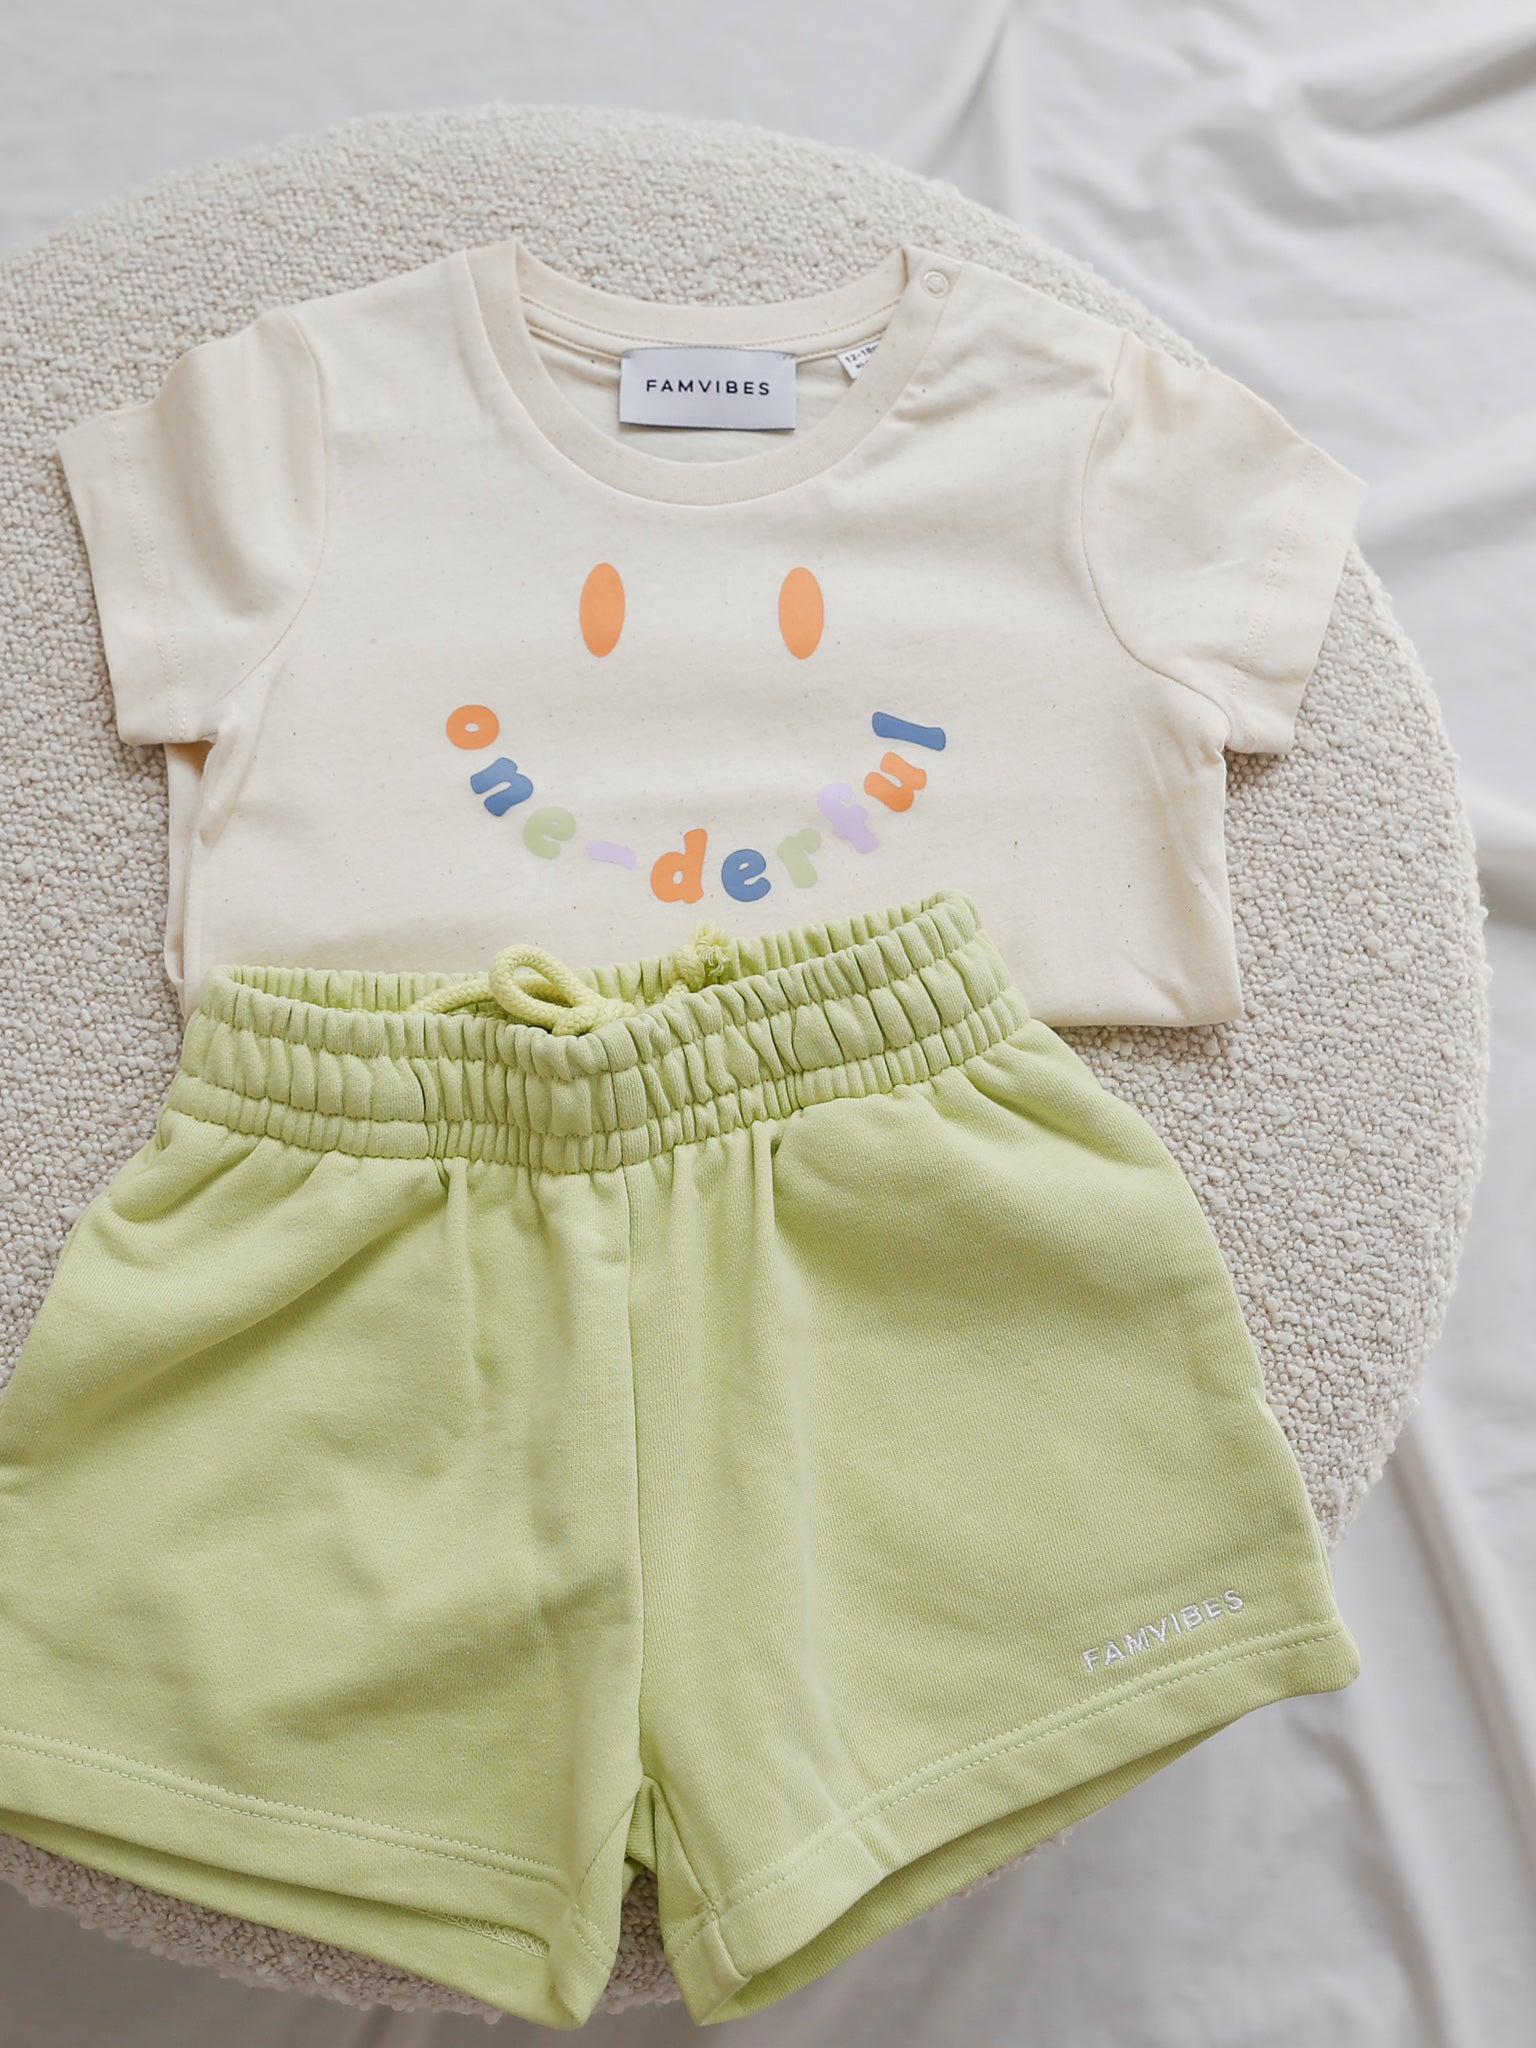 ONE - Baby Smiley Meilenstein Shirt - FAMVIBES 